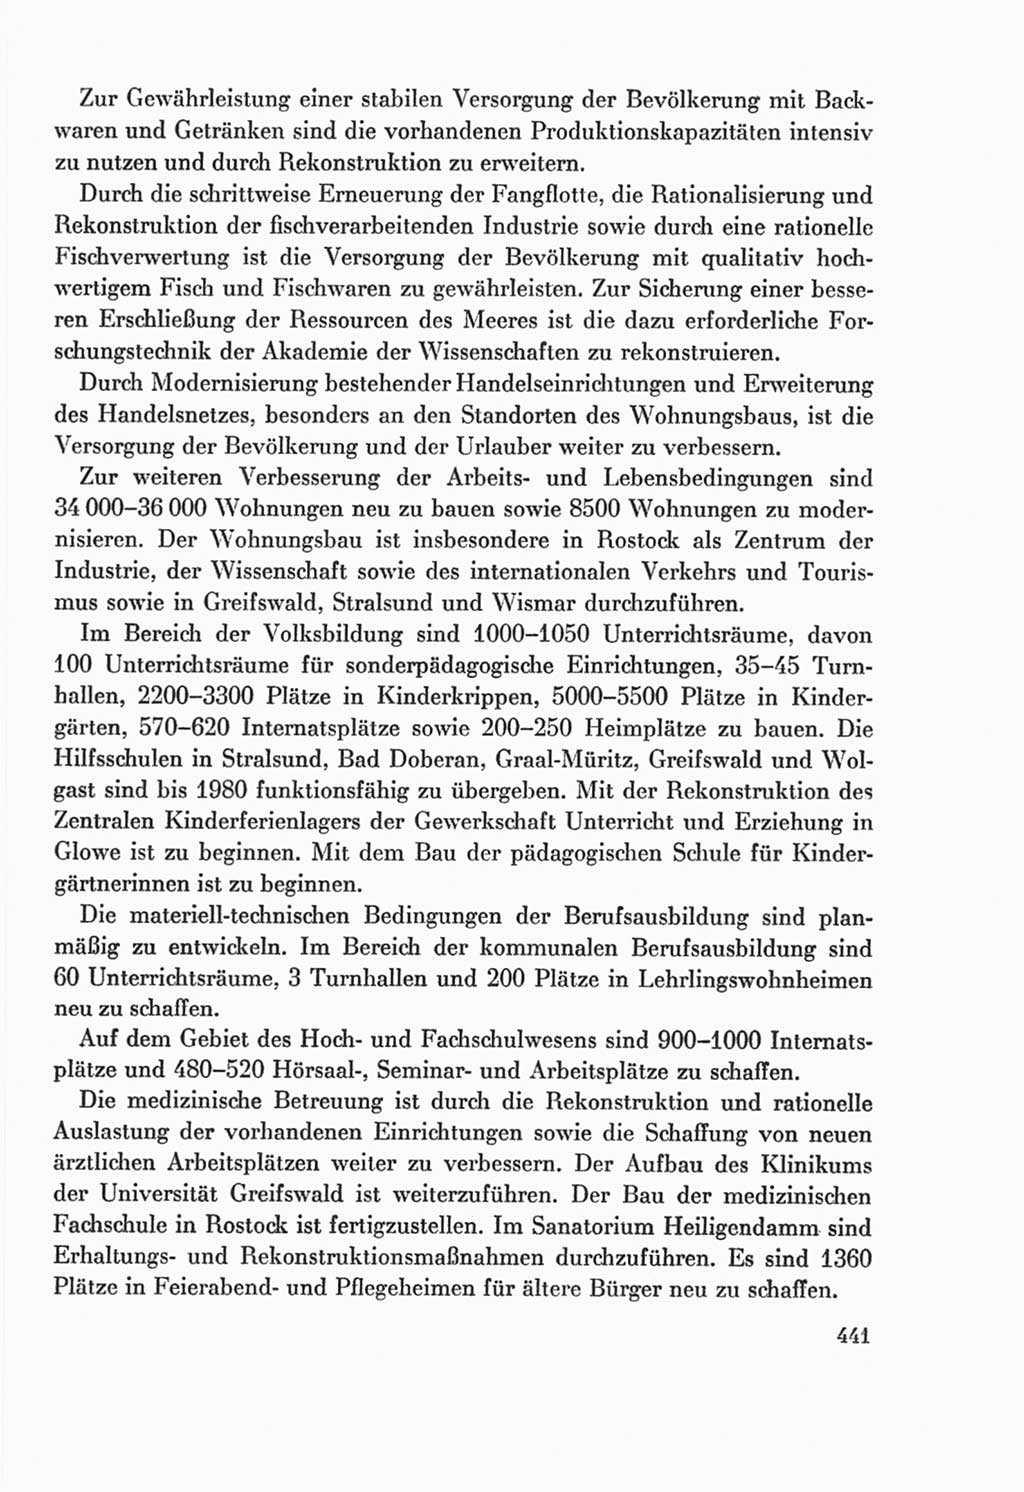 Protokoll der Verhandlungen des Ⅸ. Parteitages der Sozialistischen Einheitspartei Deutschlands (SED) [Deutsche Demokratische Republik (DDR)] 1976, Band 2, Seite 441 (Prot. Verh. Ⅸ. PT SED DDR 1976, Bd. 2, S. 441)